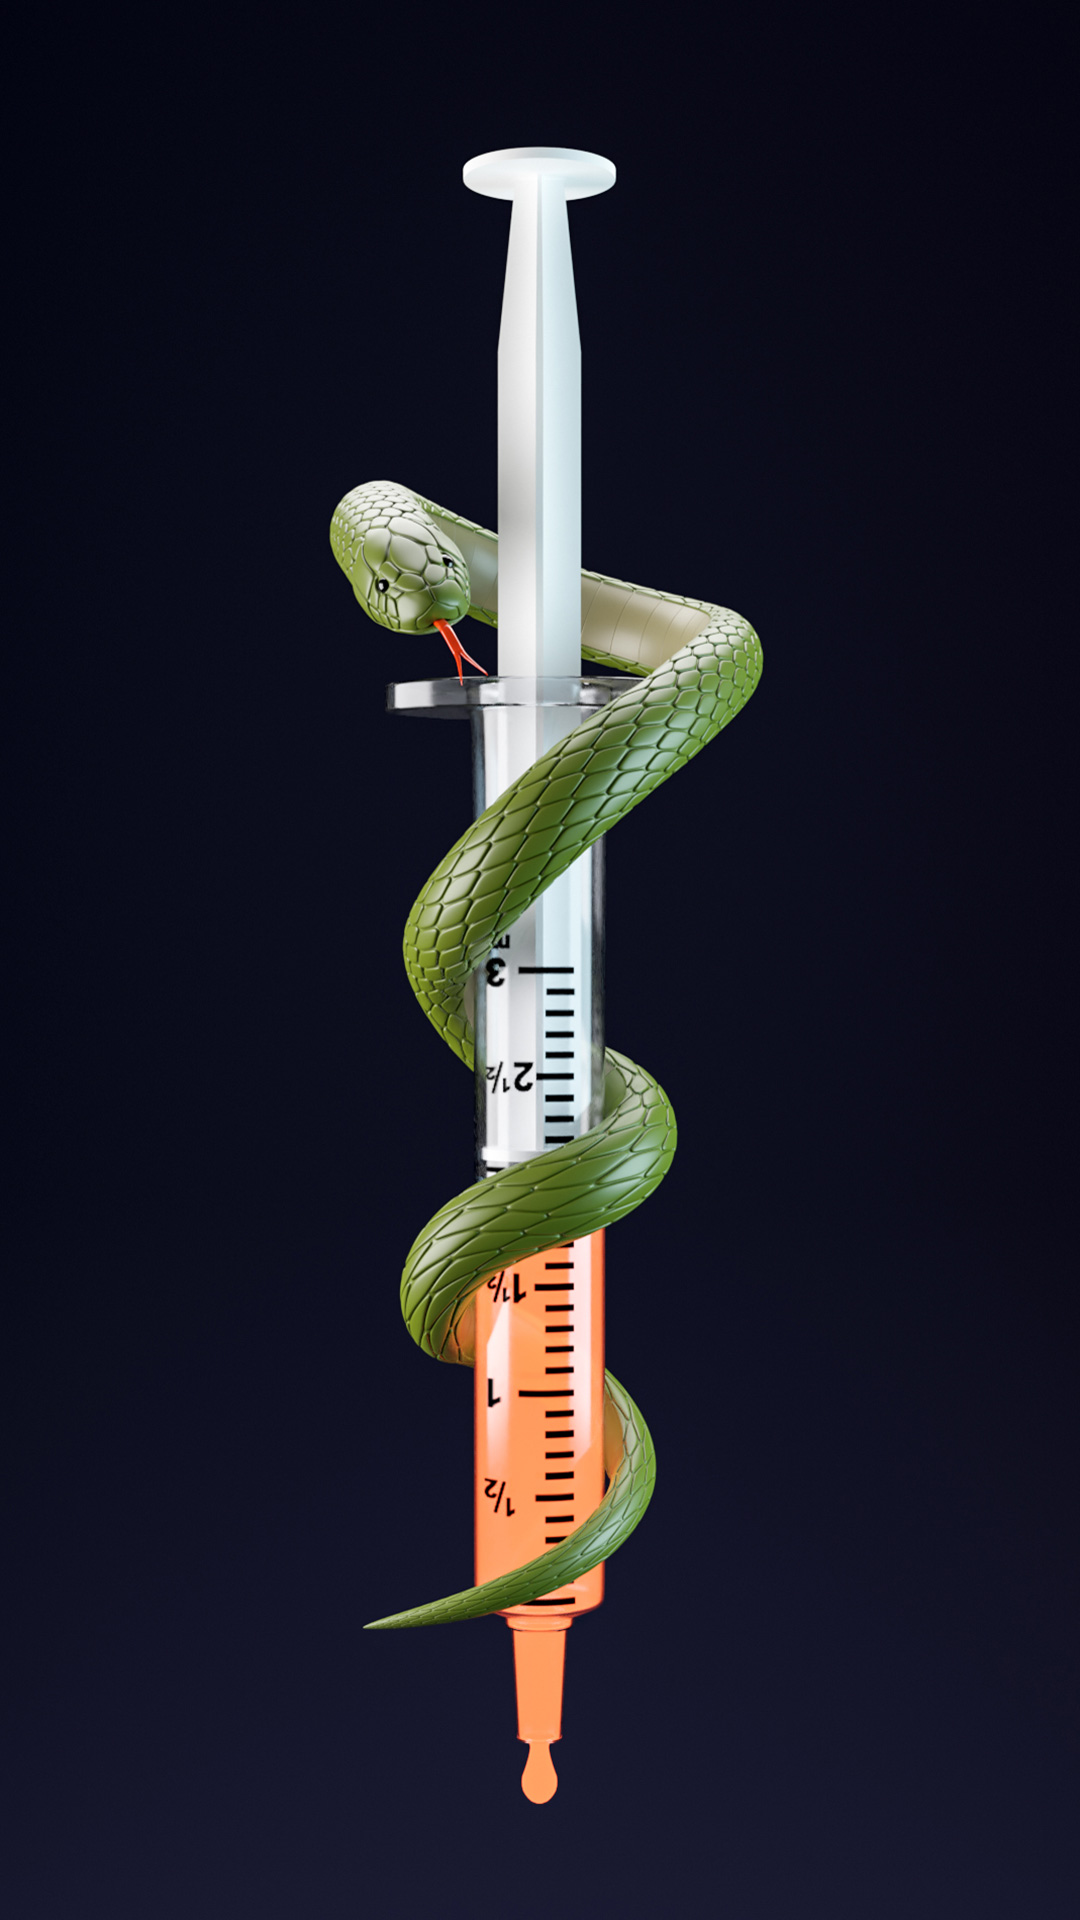 Snake wrapped around a syringe